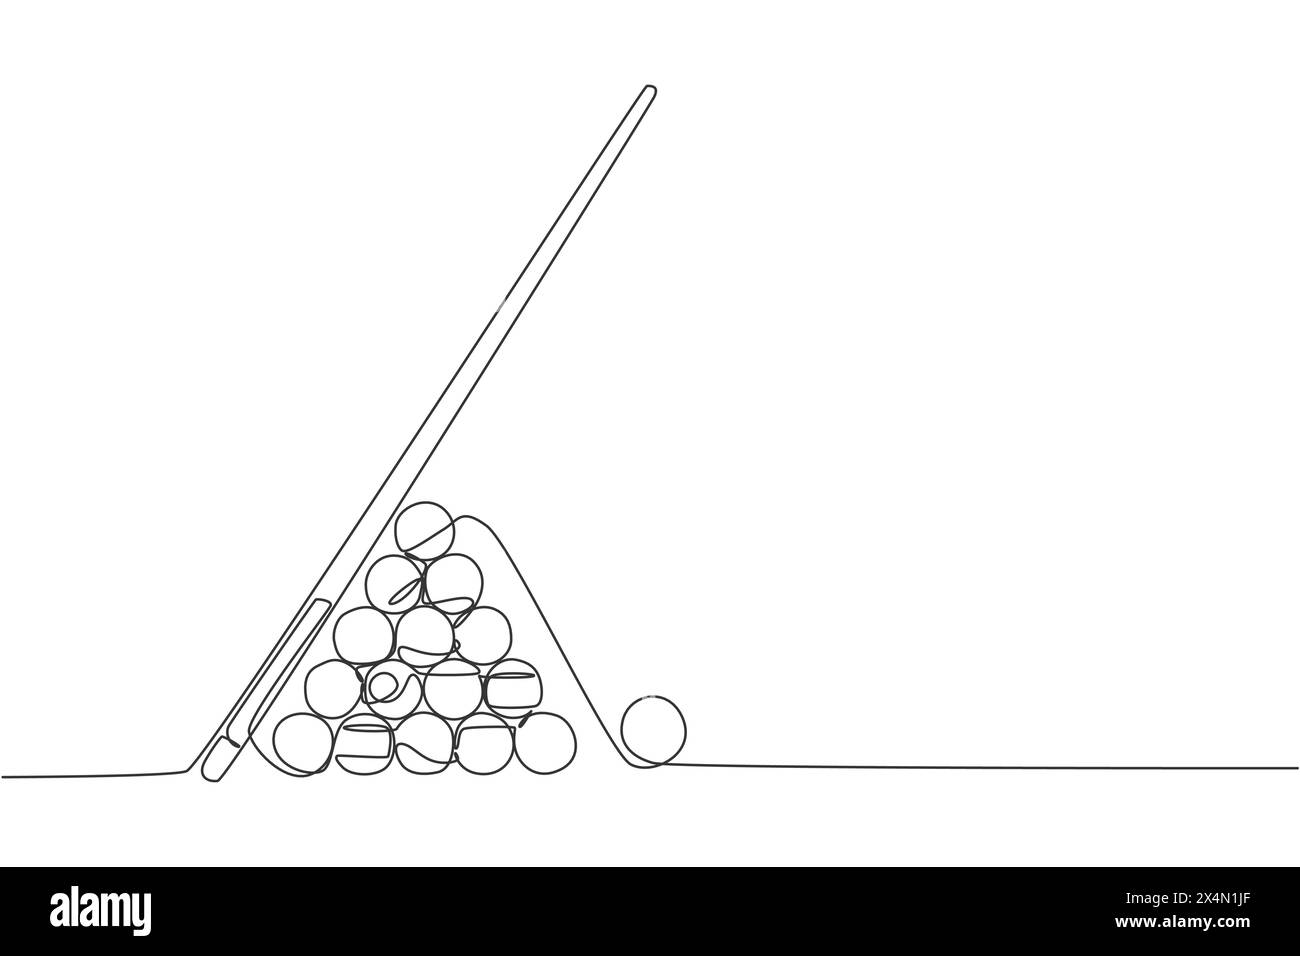 Un dessin en ligne continue de boules triangulaires pyramidales pour une partie de billard dans la salle de billard. Concept de jeu de sport intérieur de tournoi. Dynamique si Illustration de Vecteur